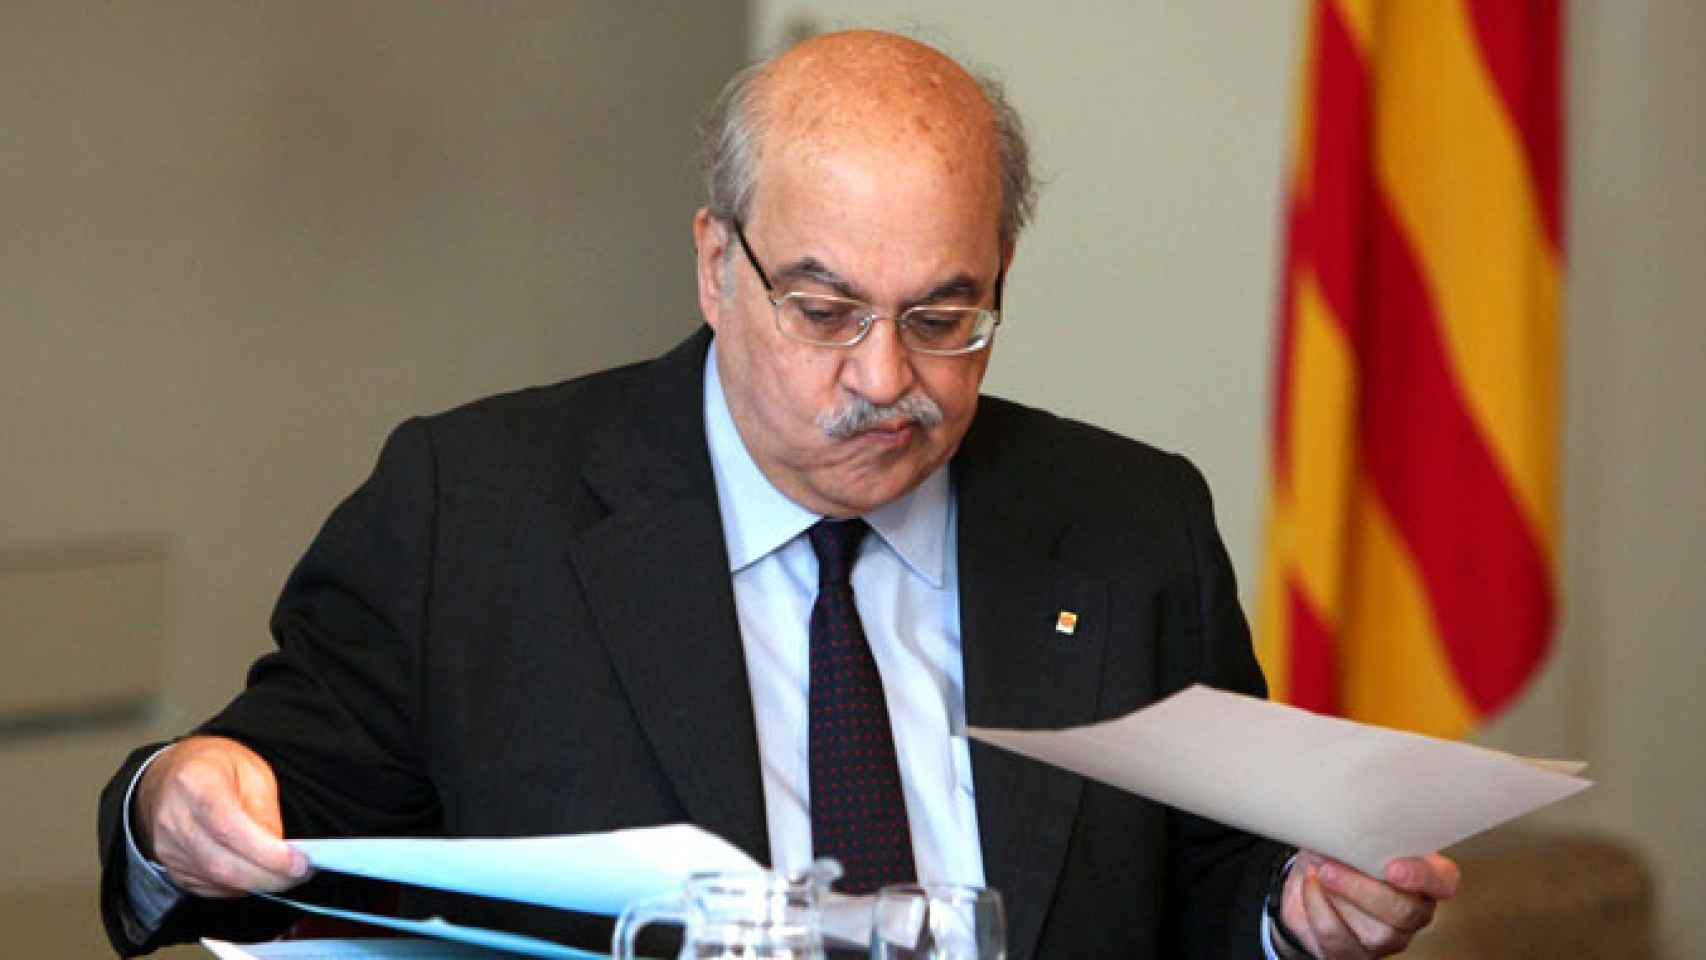 El consejero de Economía y Conocimiento de la Generalitat entre 2010 y 2016, Andreu Mas-Colell, en una imagen de archivo / EFE